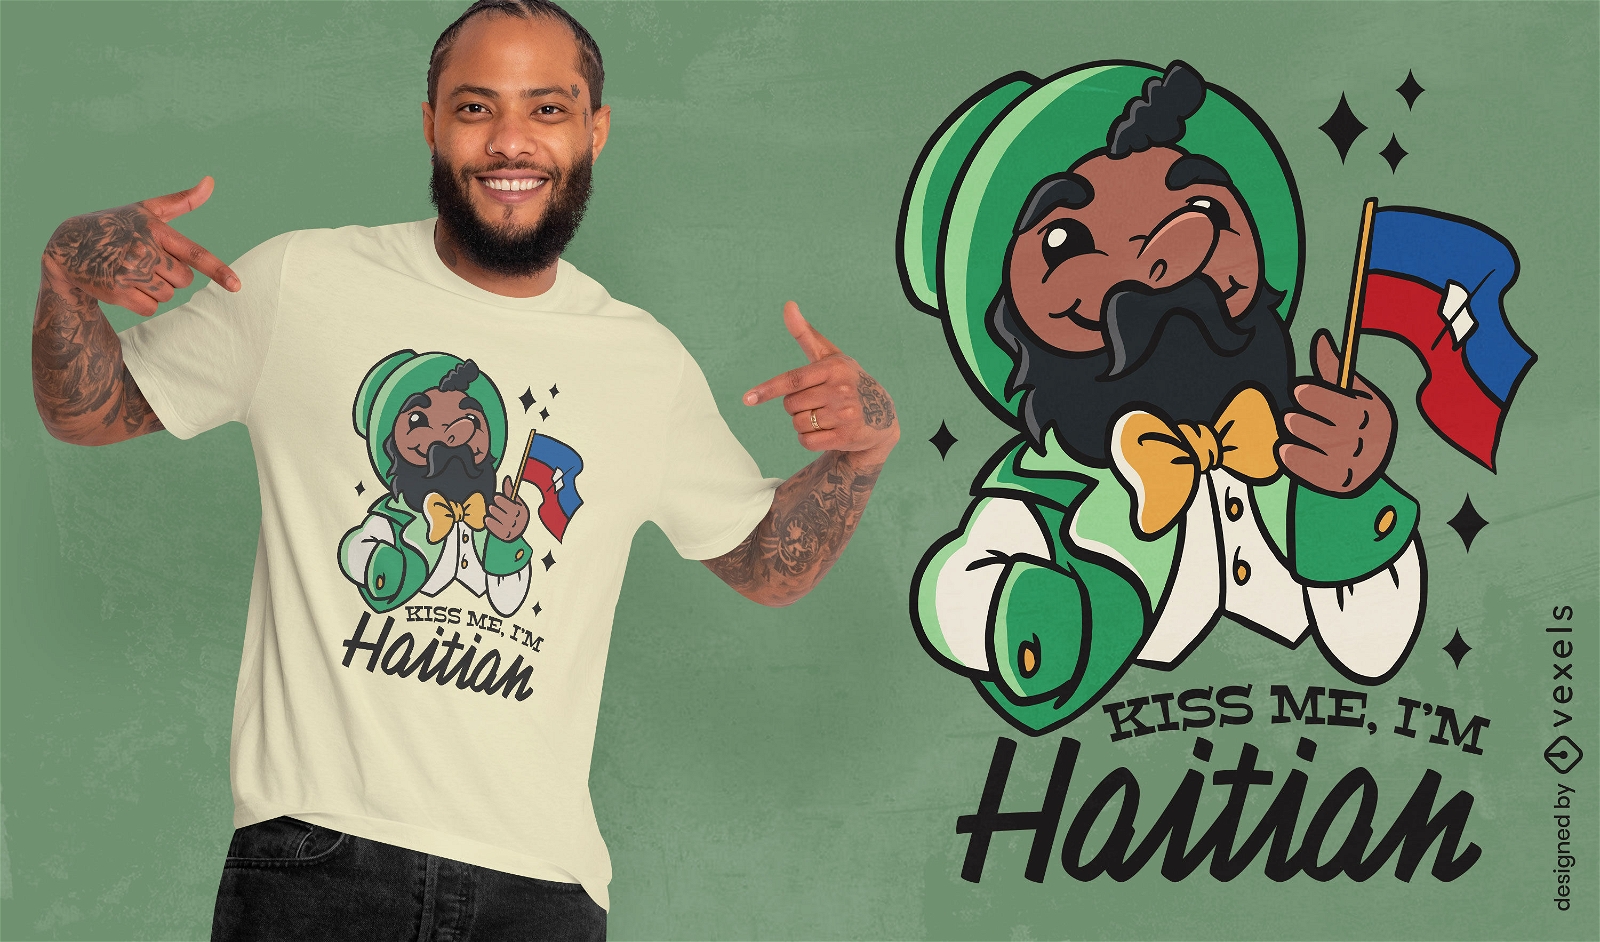 Küss mich, ich bin ein haitianisches T-Shirt-Design